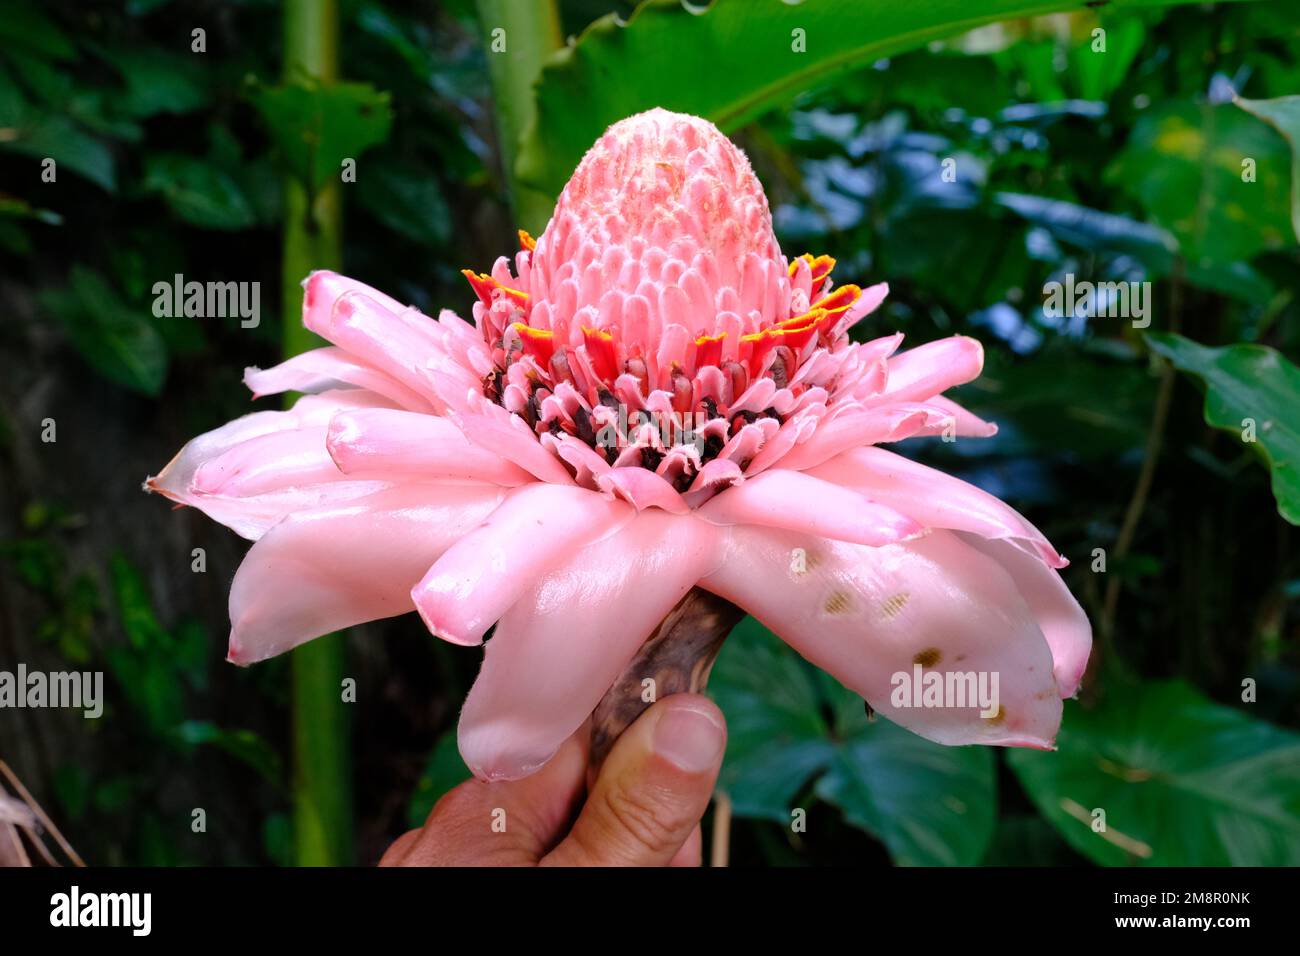 Indonesia Bali - Etlingera elatior - ginger flower - wild ginger Stock Photo